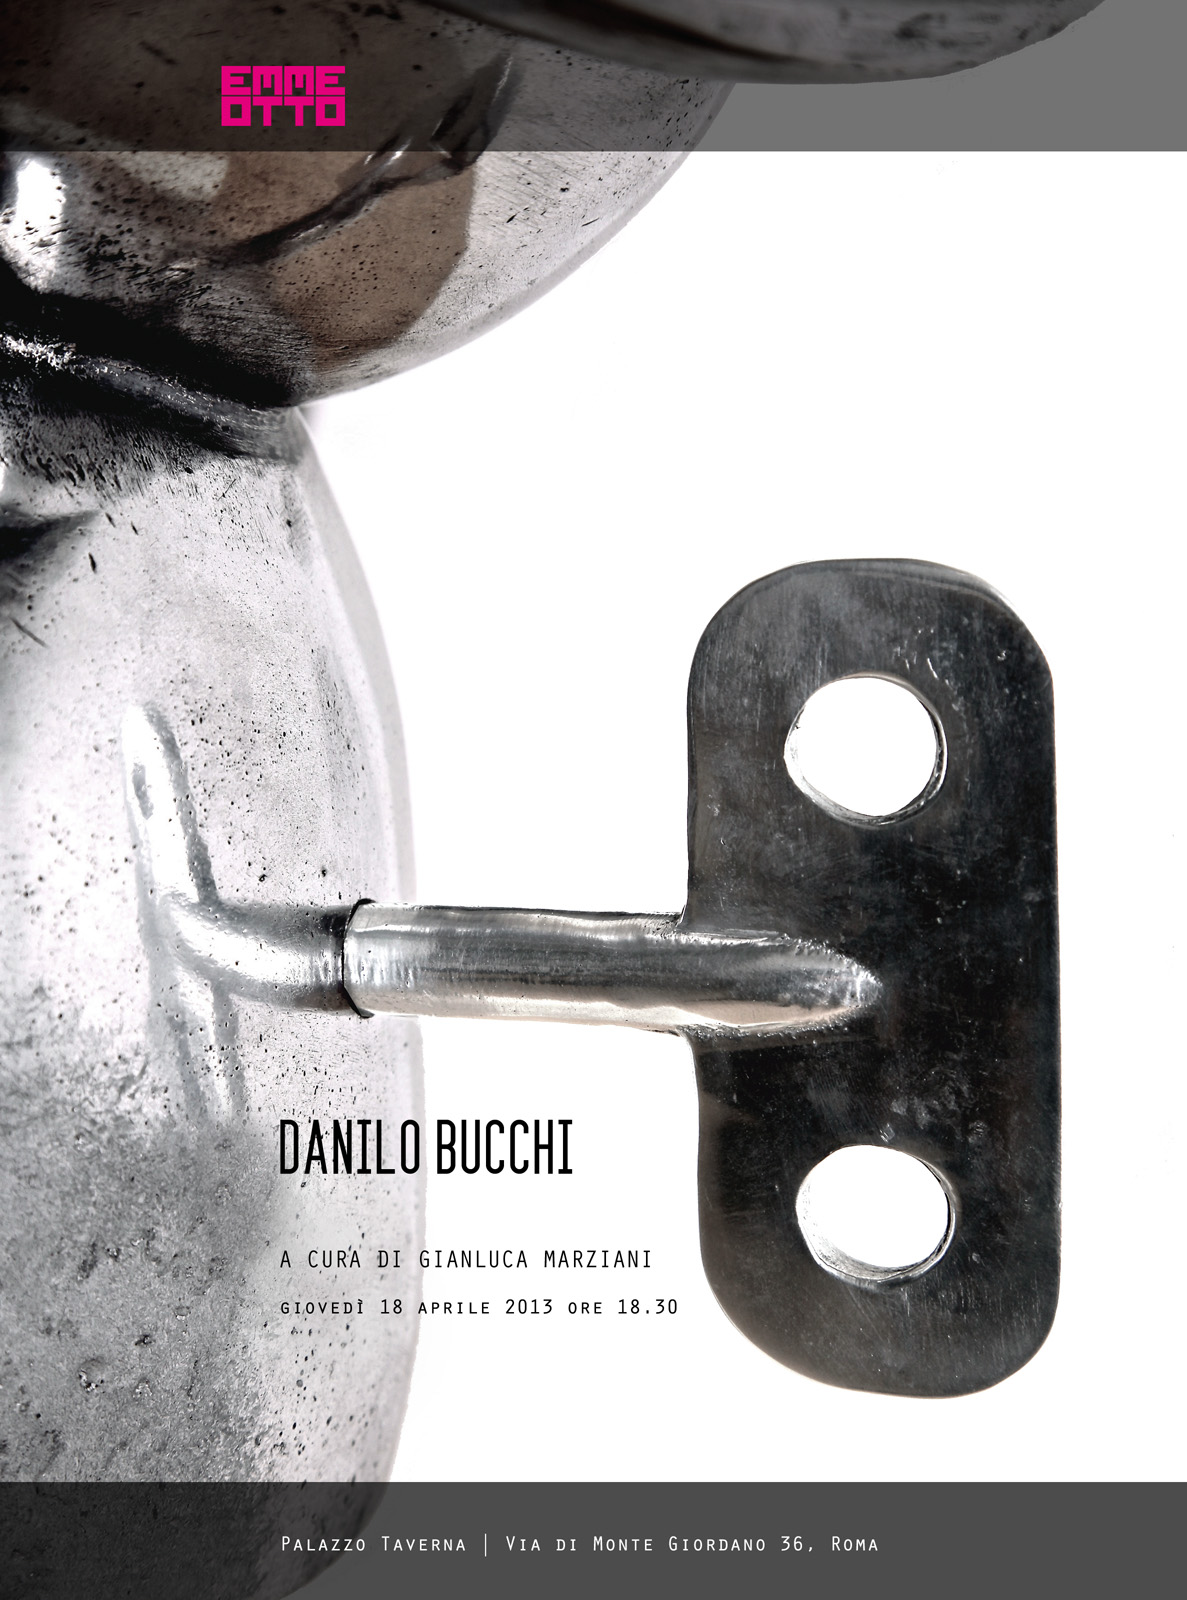 Danilo Bucchi